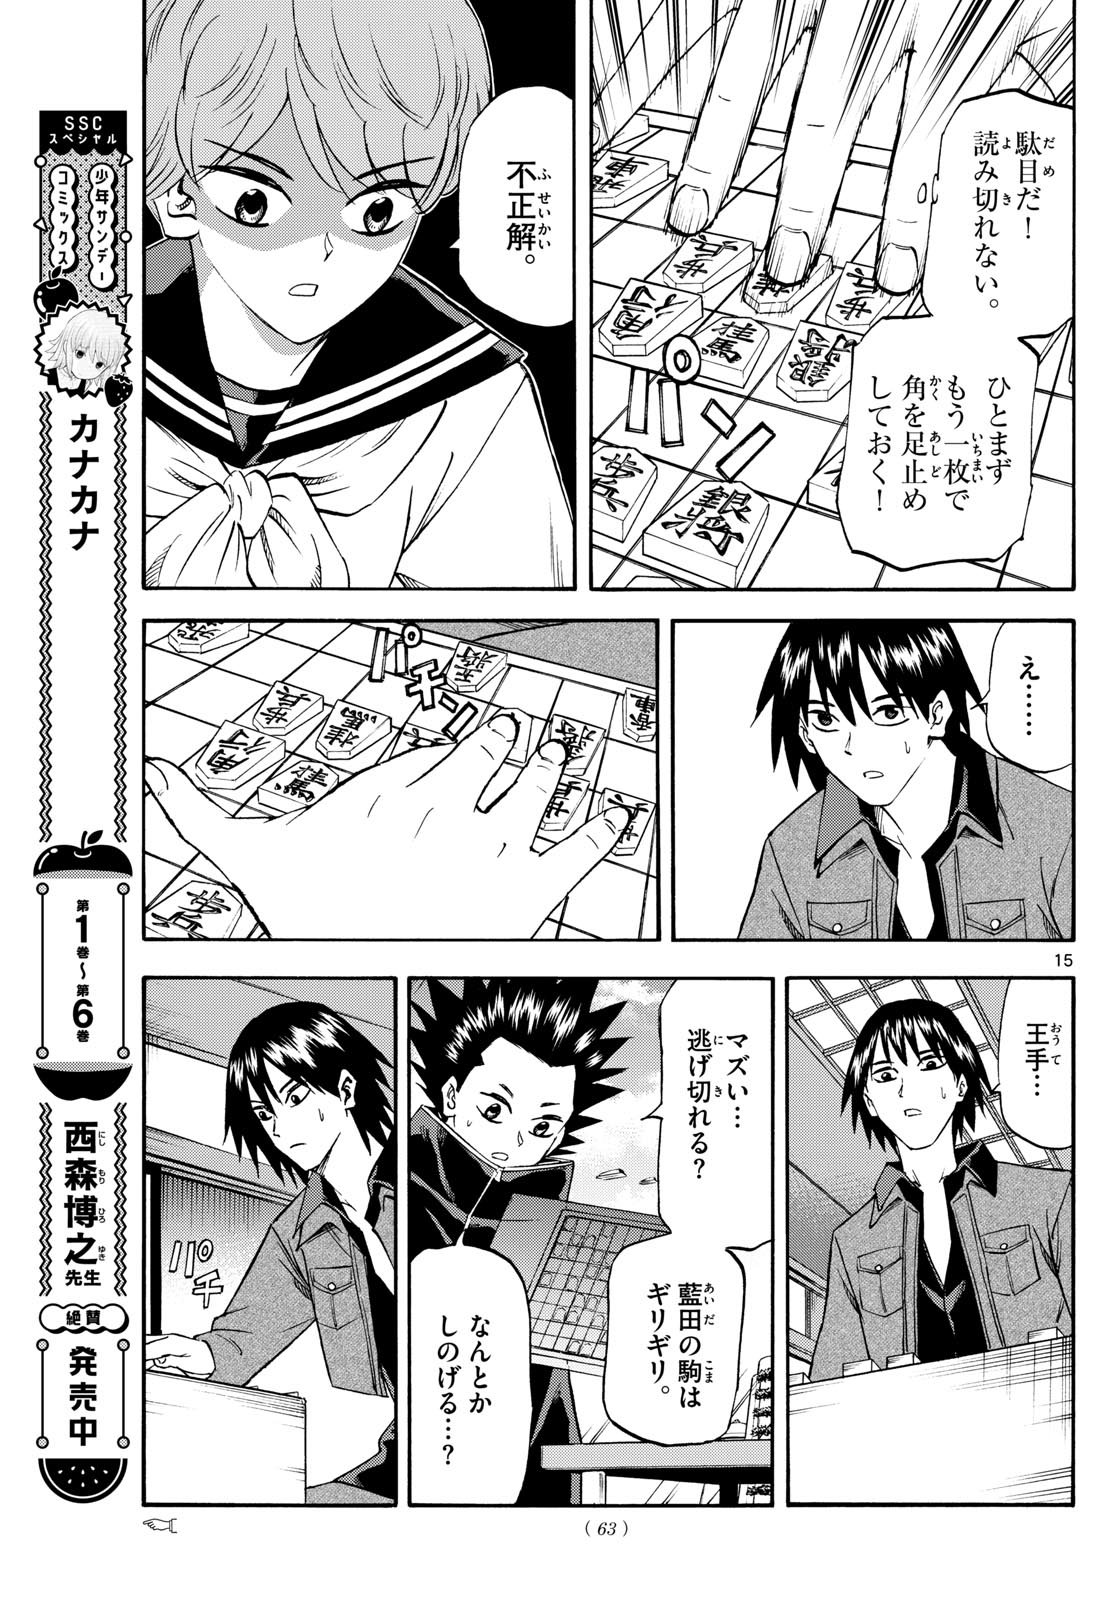 Tatsu to Ichigo - Chapter 194 - Page 15